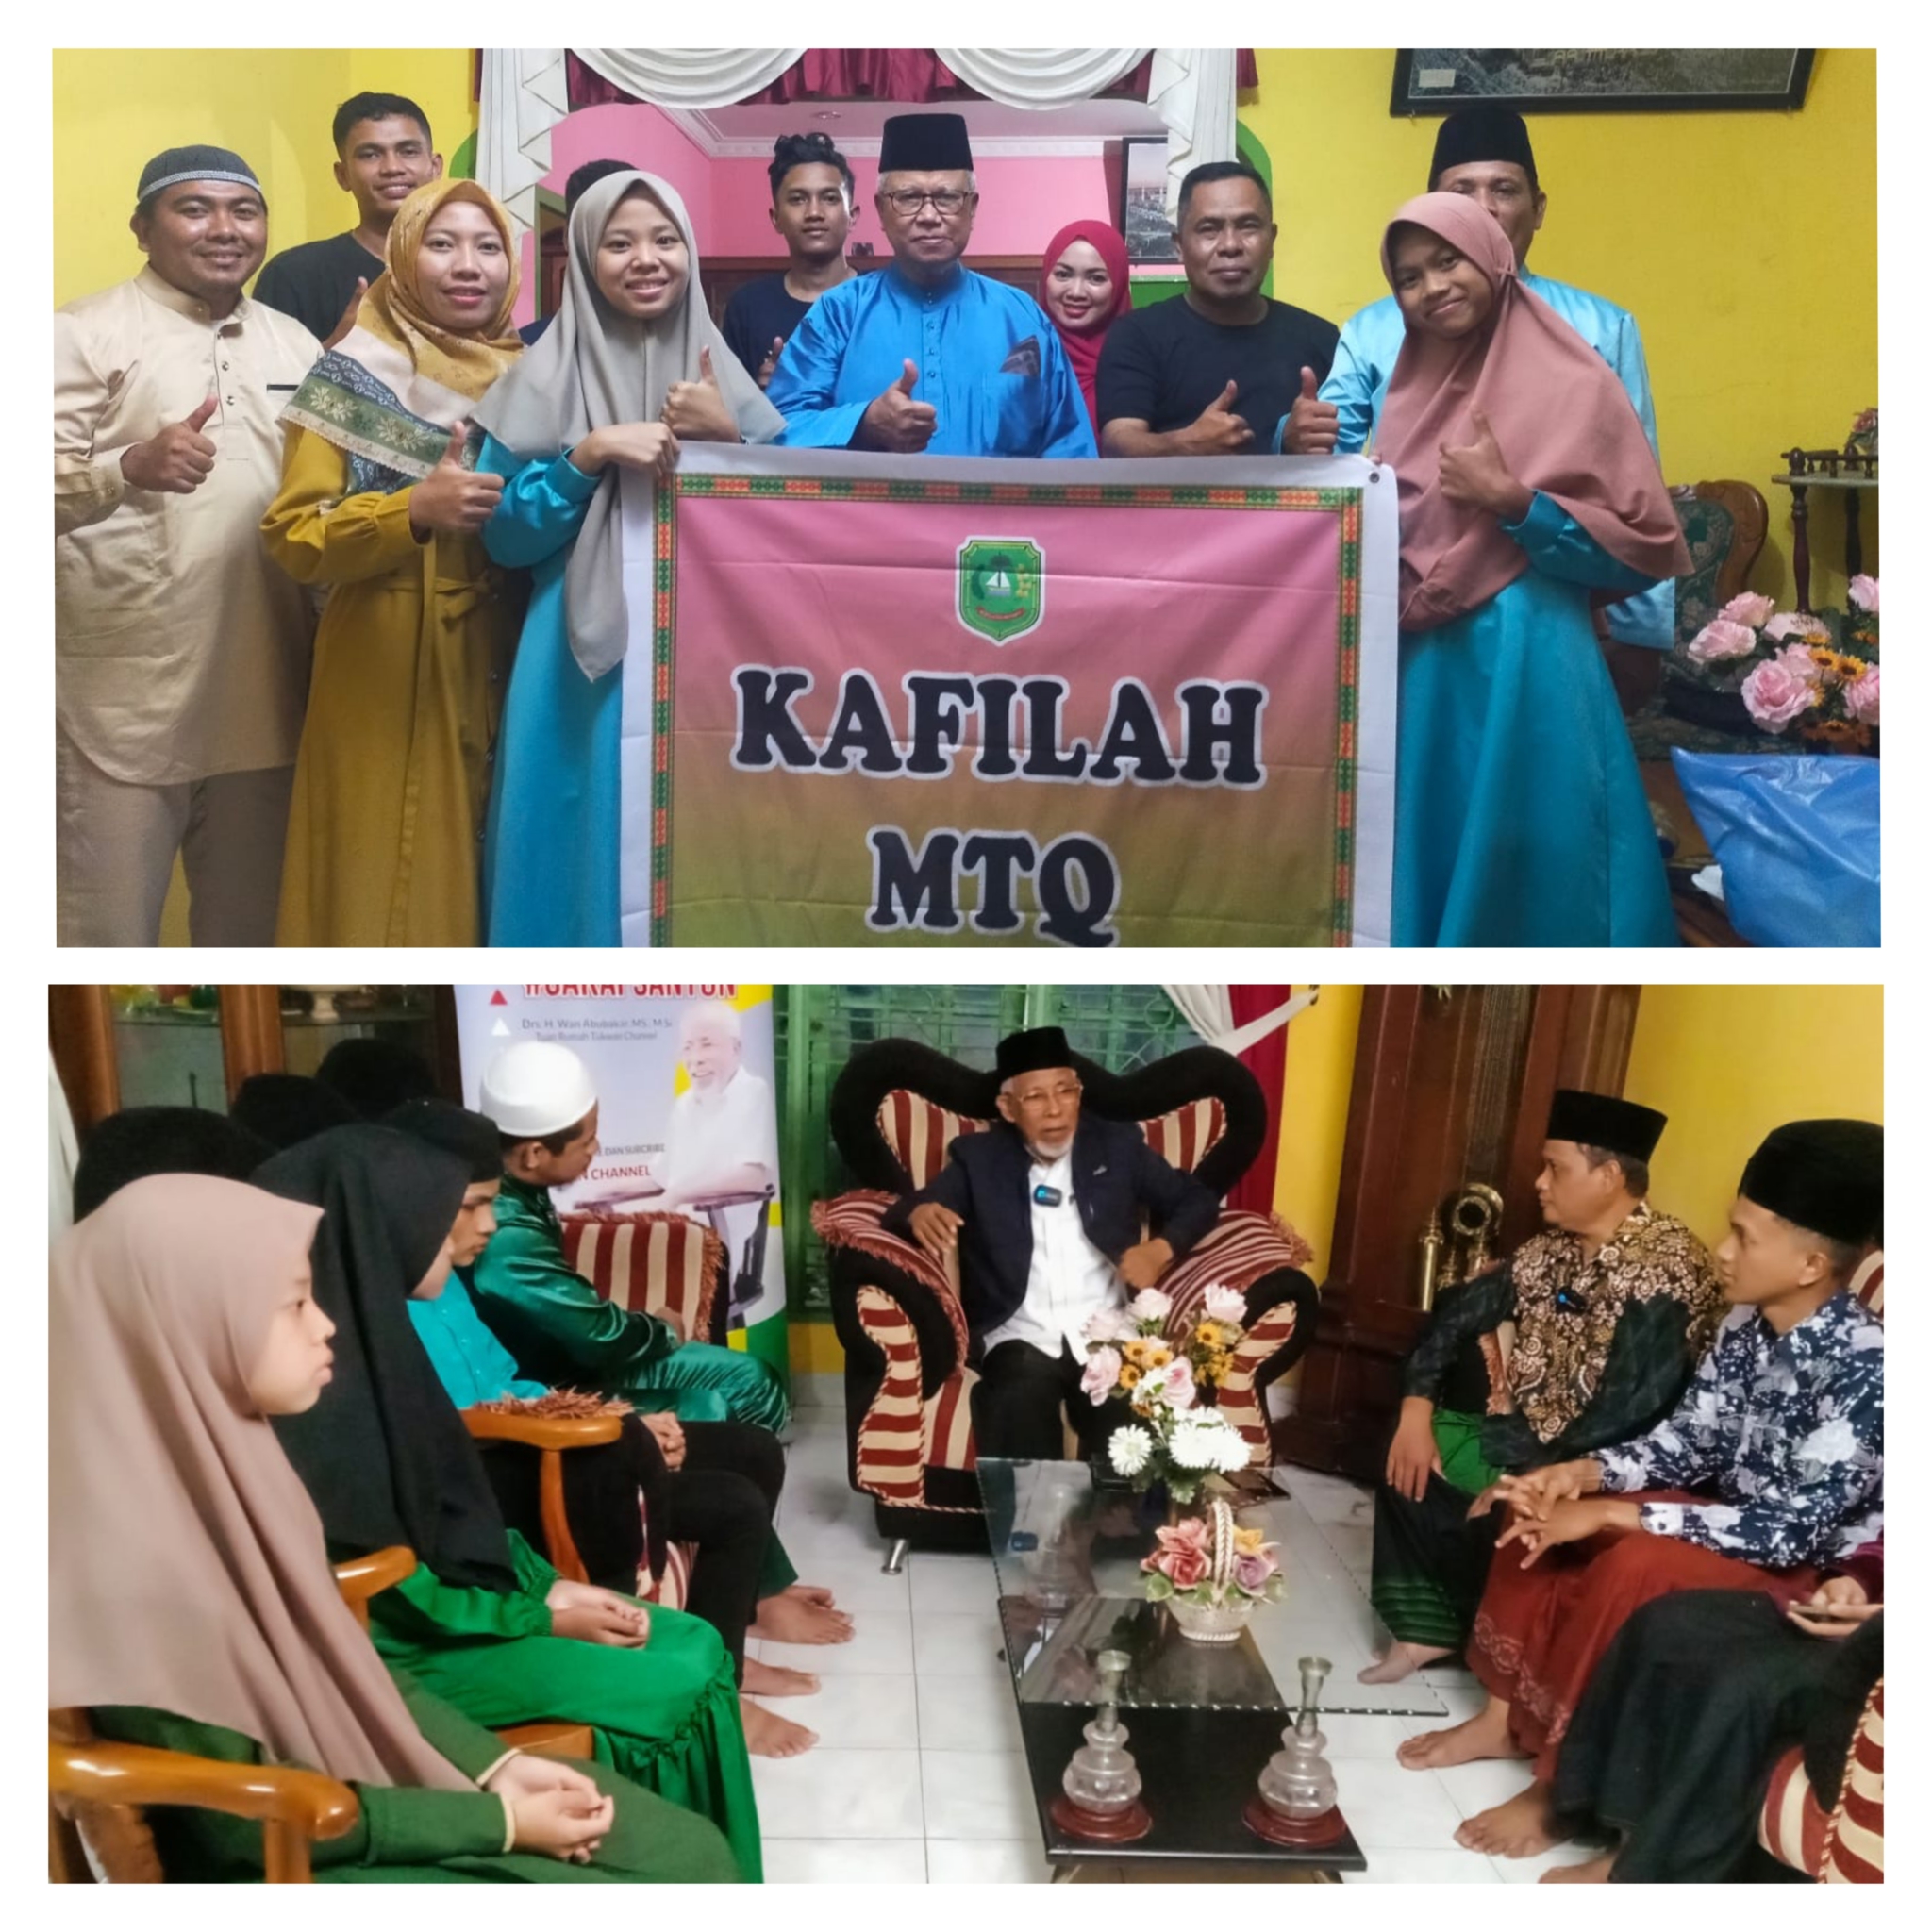 Mantan Gubri, Wan Abu Bakar dan anggota DPR RI, Syamsurizal saat mengunjungi kafilah Kepulauan Meranti yang bertanding di MTQ Riau.